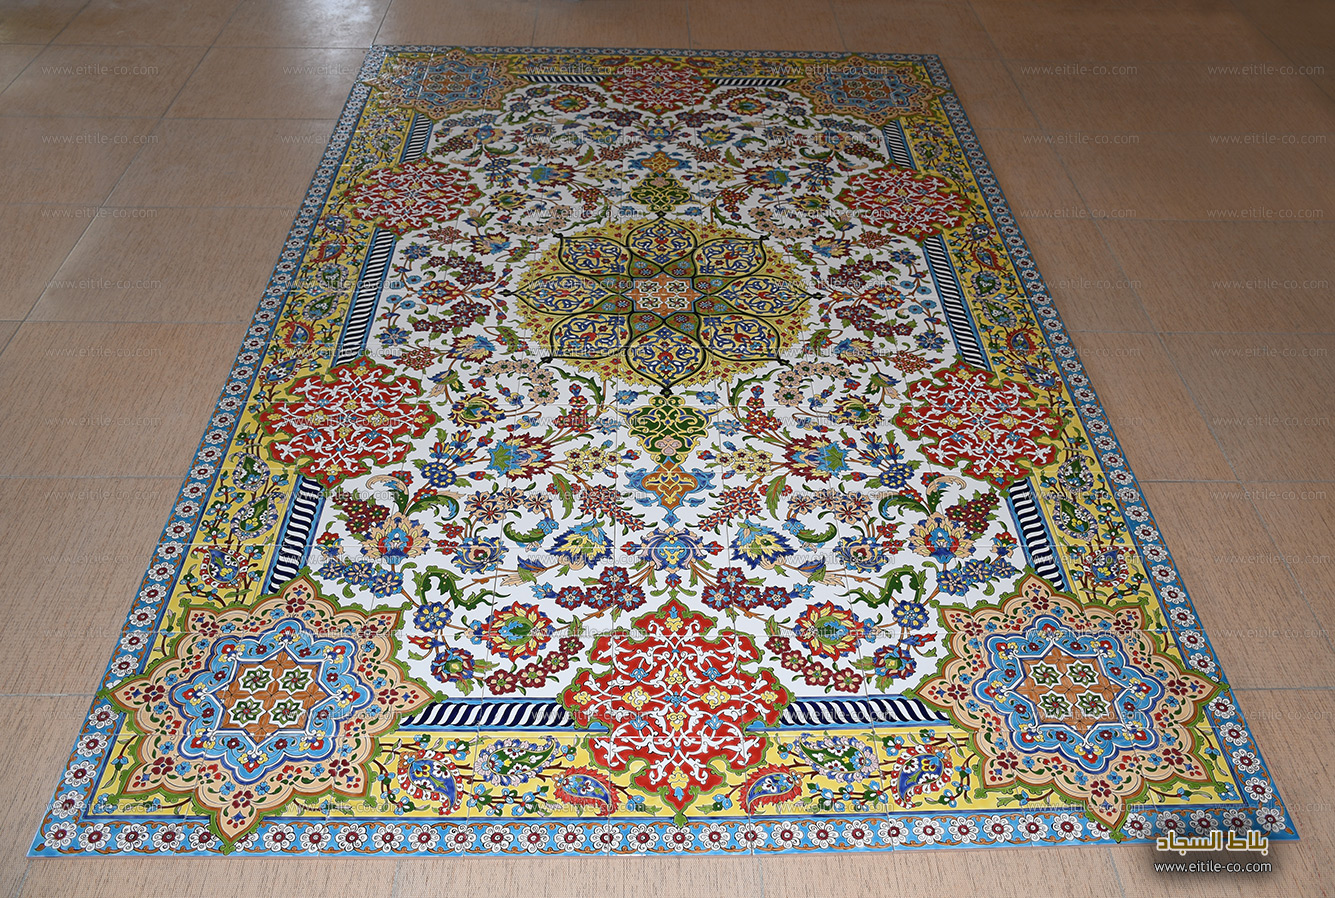 Carpet design on handmade tiles, www.eitile-co.com